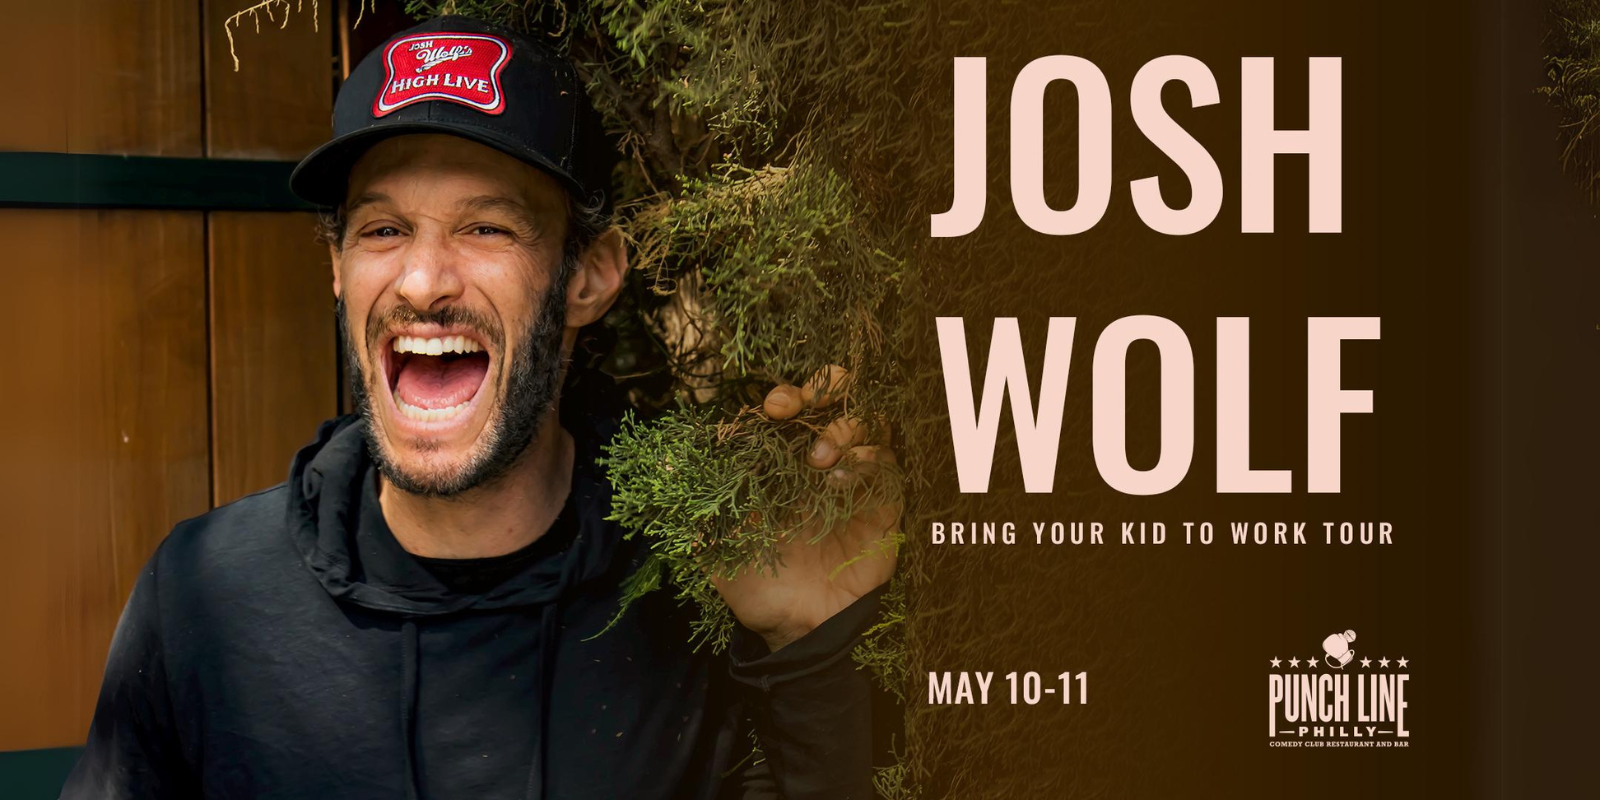 JOSH WOLF: Bring Your Kid To Work Tour